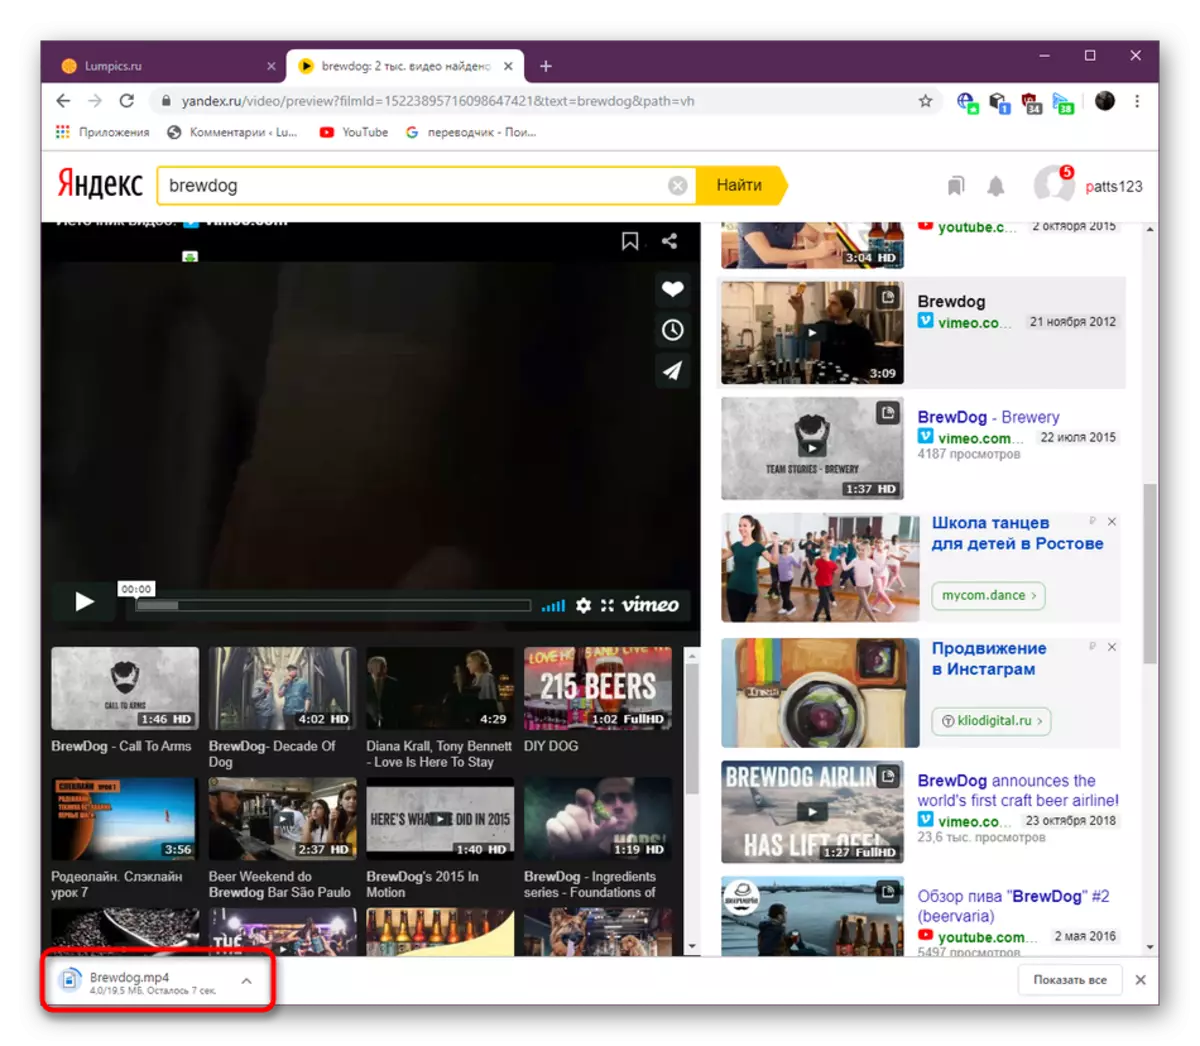 ایک براؤزر ضمیمہ Savefrom.net کا استعمال کرتے ہوئے Yandex.video کے ذریعے ویڈیو ڈاؤن لوڈ کرنے کے لئے انتظار کر رہے ہیں